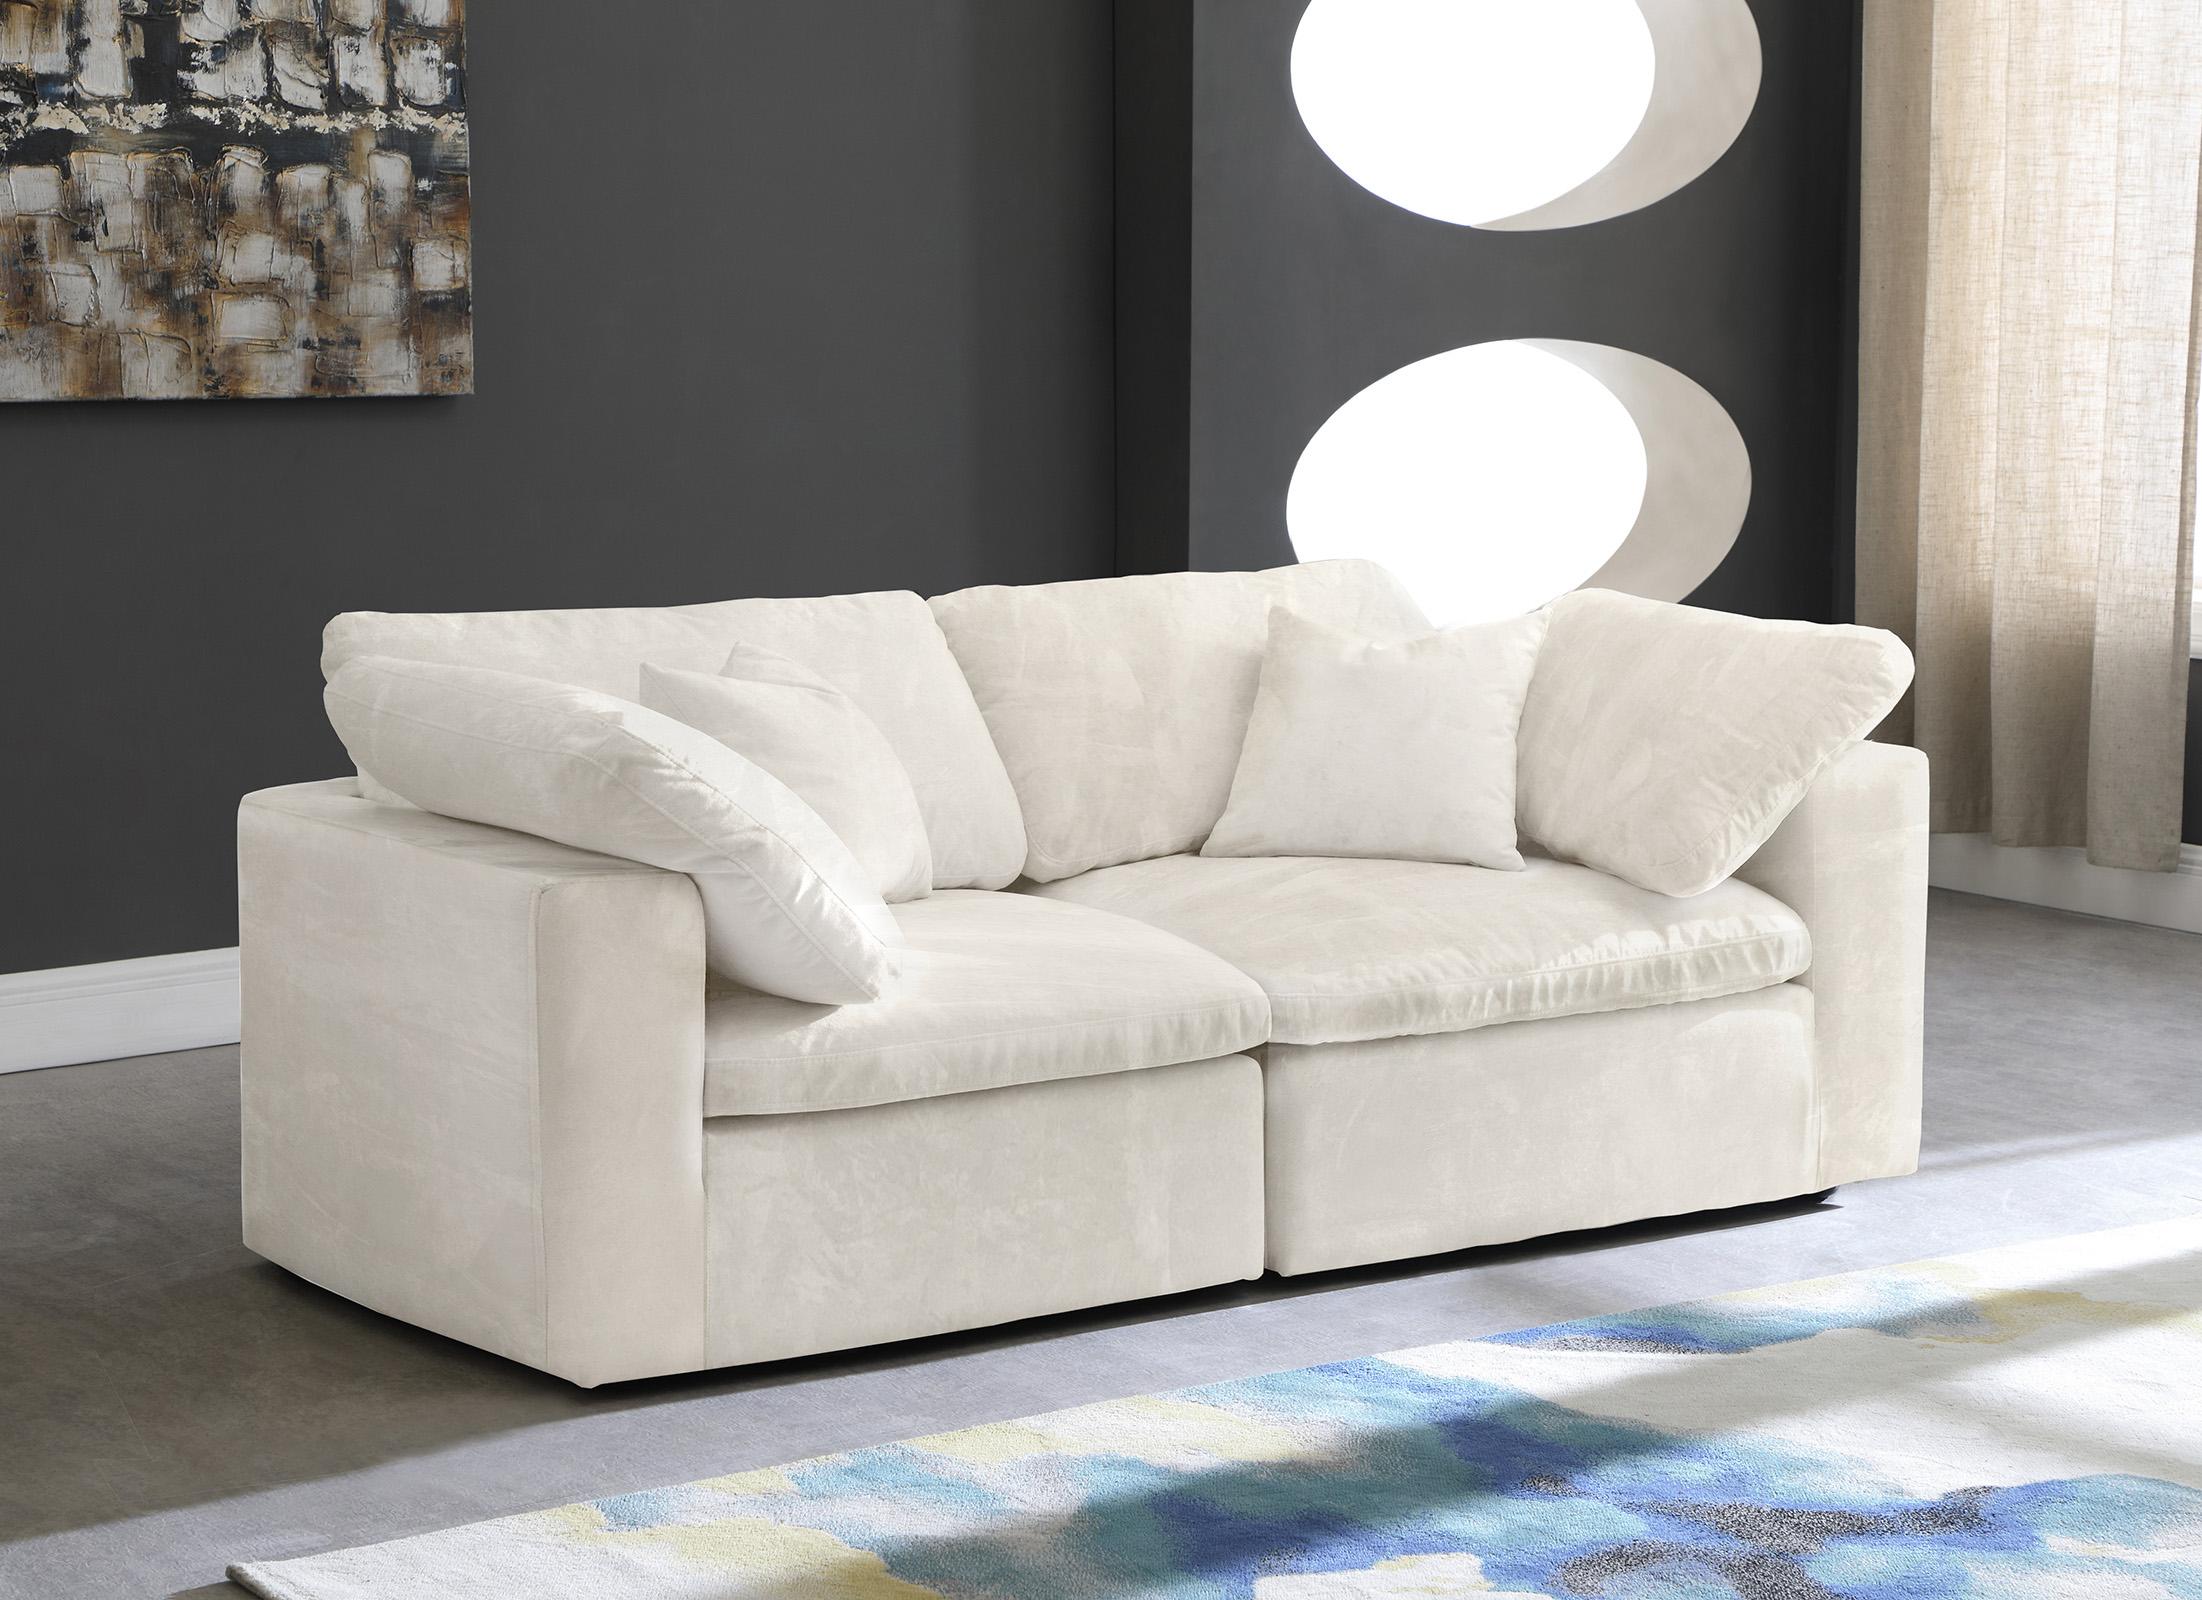 

    
Meridian Furniture 634Cream-S80 Modular Sofa Cream 634Cream-S80
